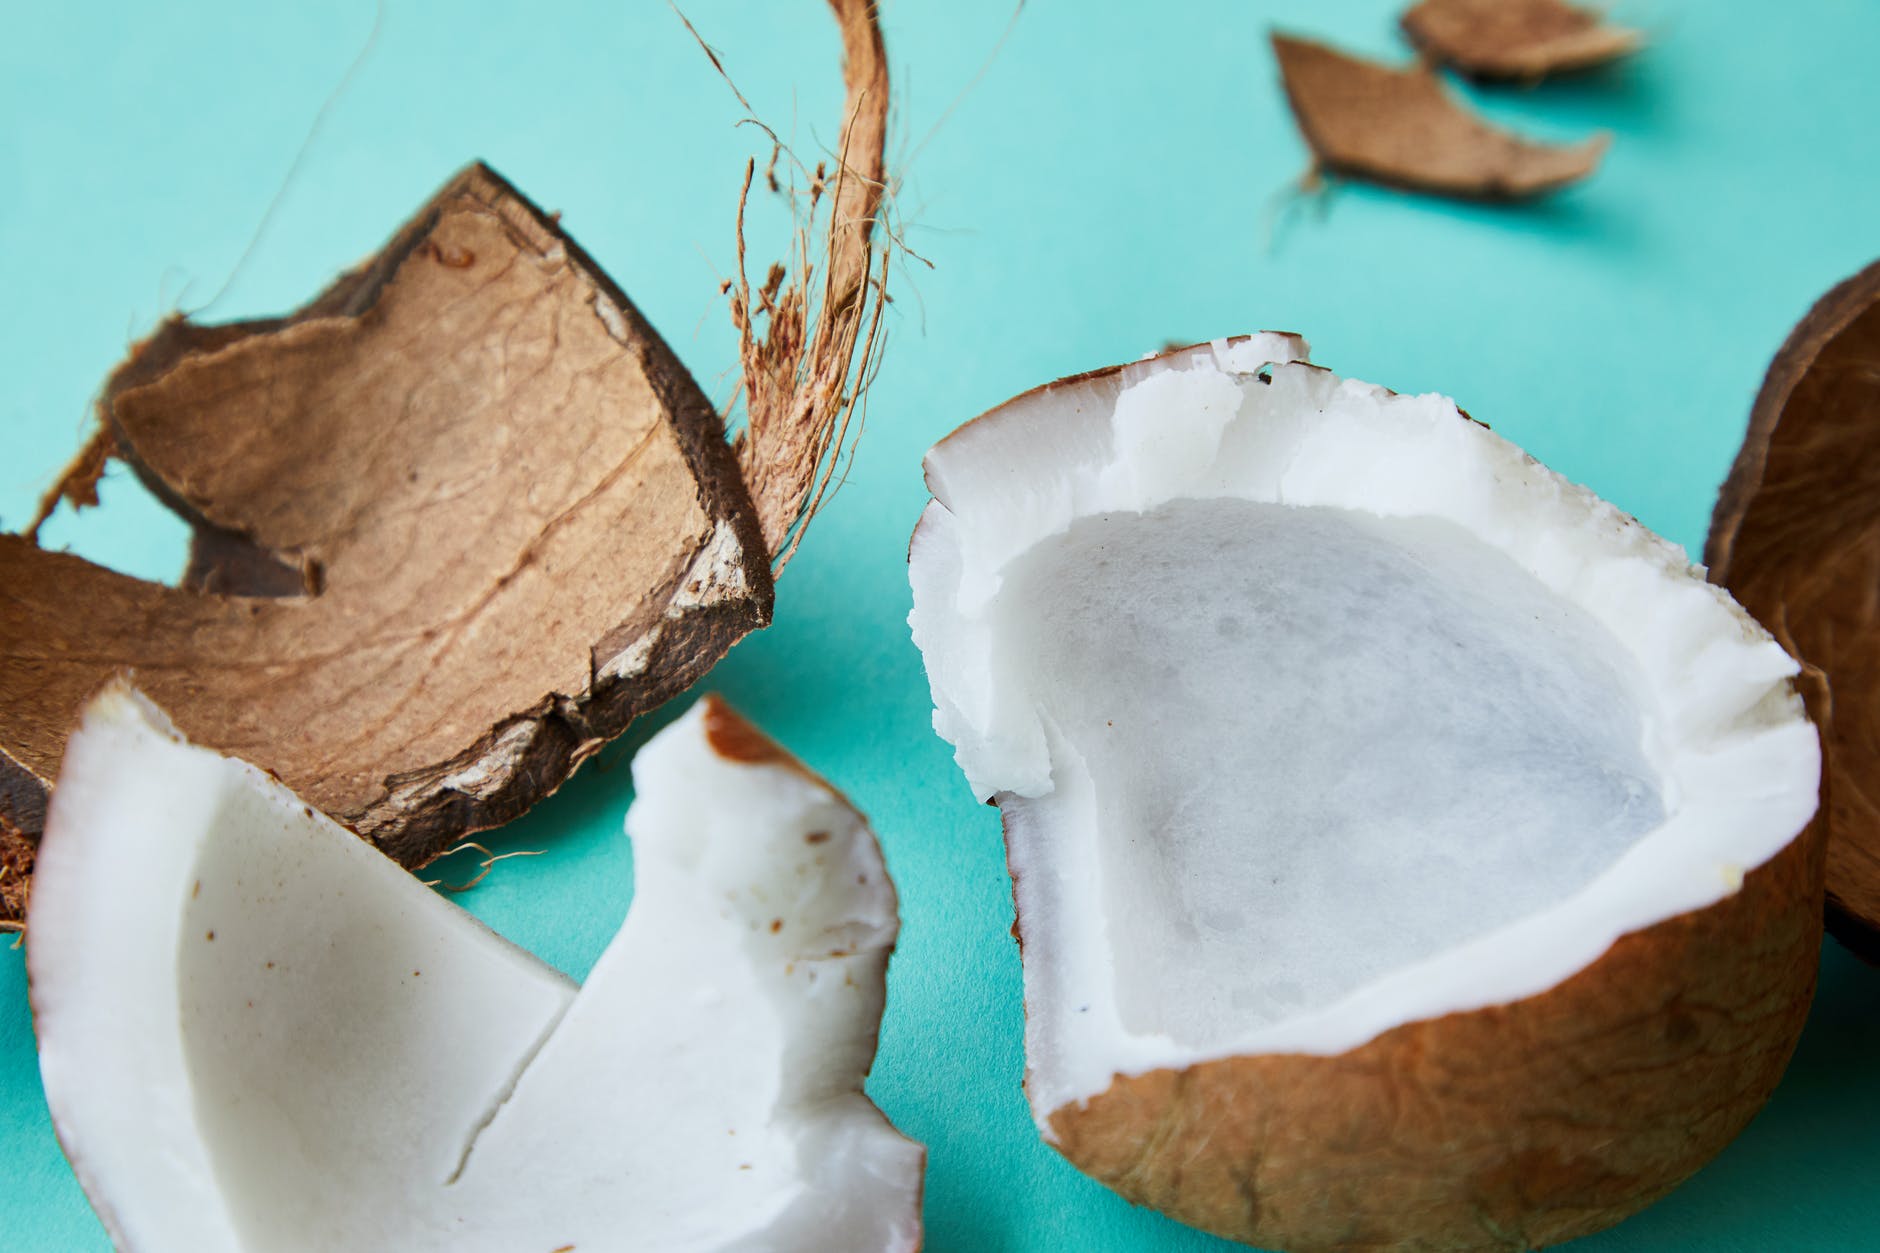 Como aproveitar a casca do coco? Confira dicas incríveis